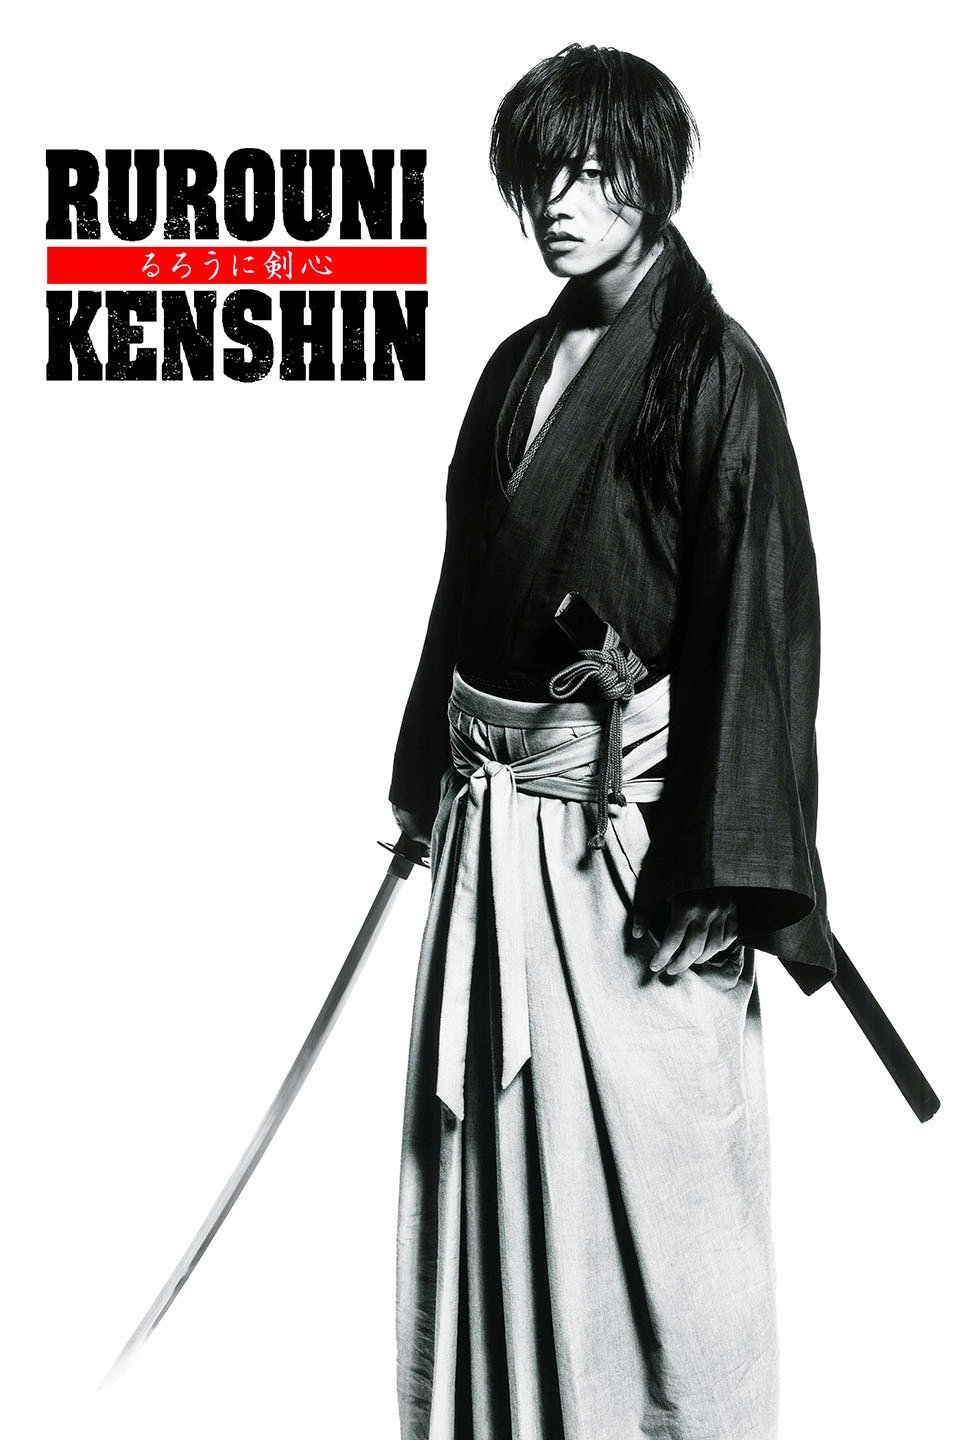 [MINI Super-HQ] Rurouni Kenshin (2012) รูโรนิ เคนชิน คนจริง โคตรซามูไร ภาค 1 [1080p] [พากย์ไทย 5.1 + ญี่ปุ่น DTS] [บรรยายไทย + อังกฤษ] [เสียงไทย + ซับไทย] [ONE2UP]